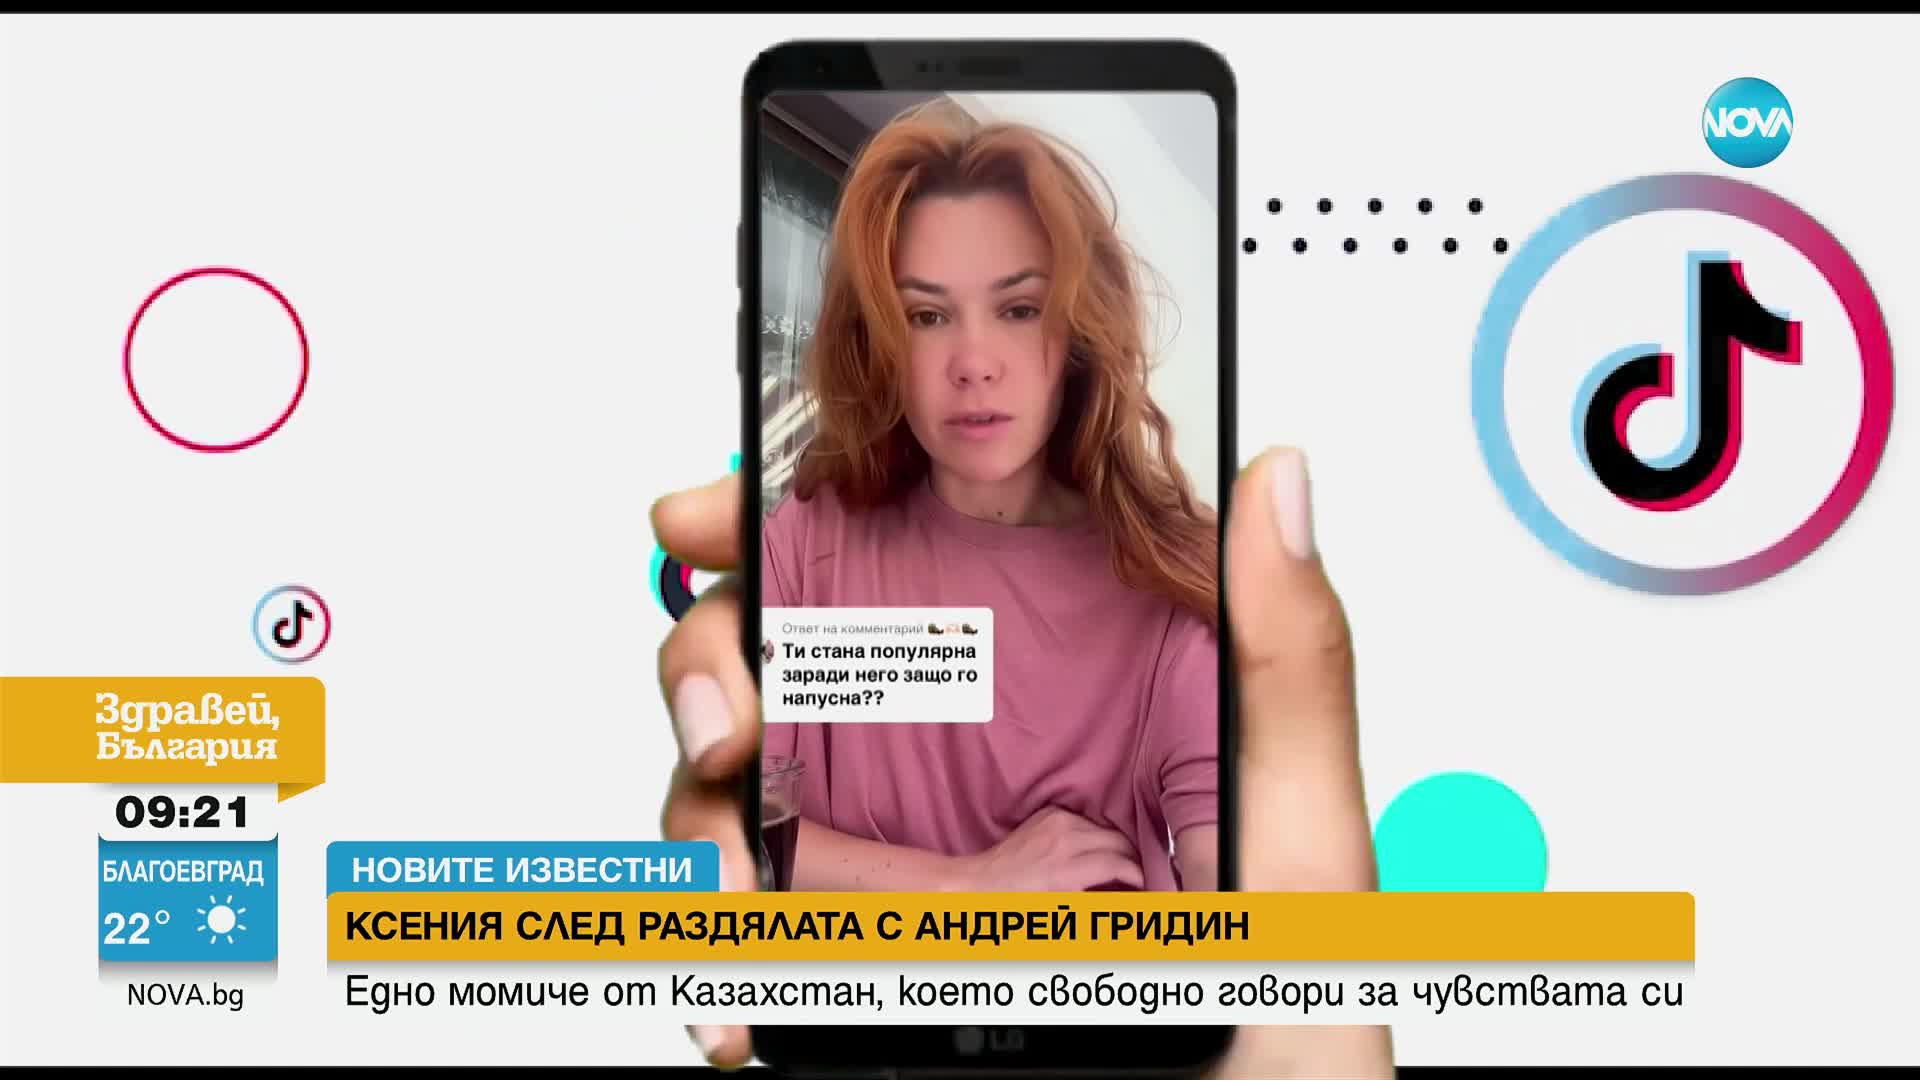 "Новите известни": Ксения след раздялата с Андрей Гридин